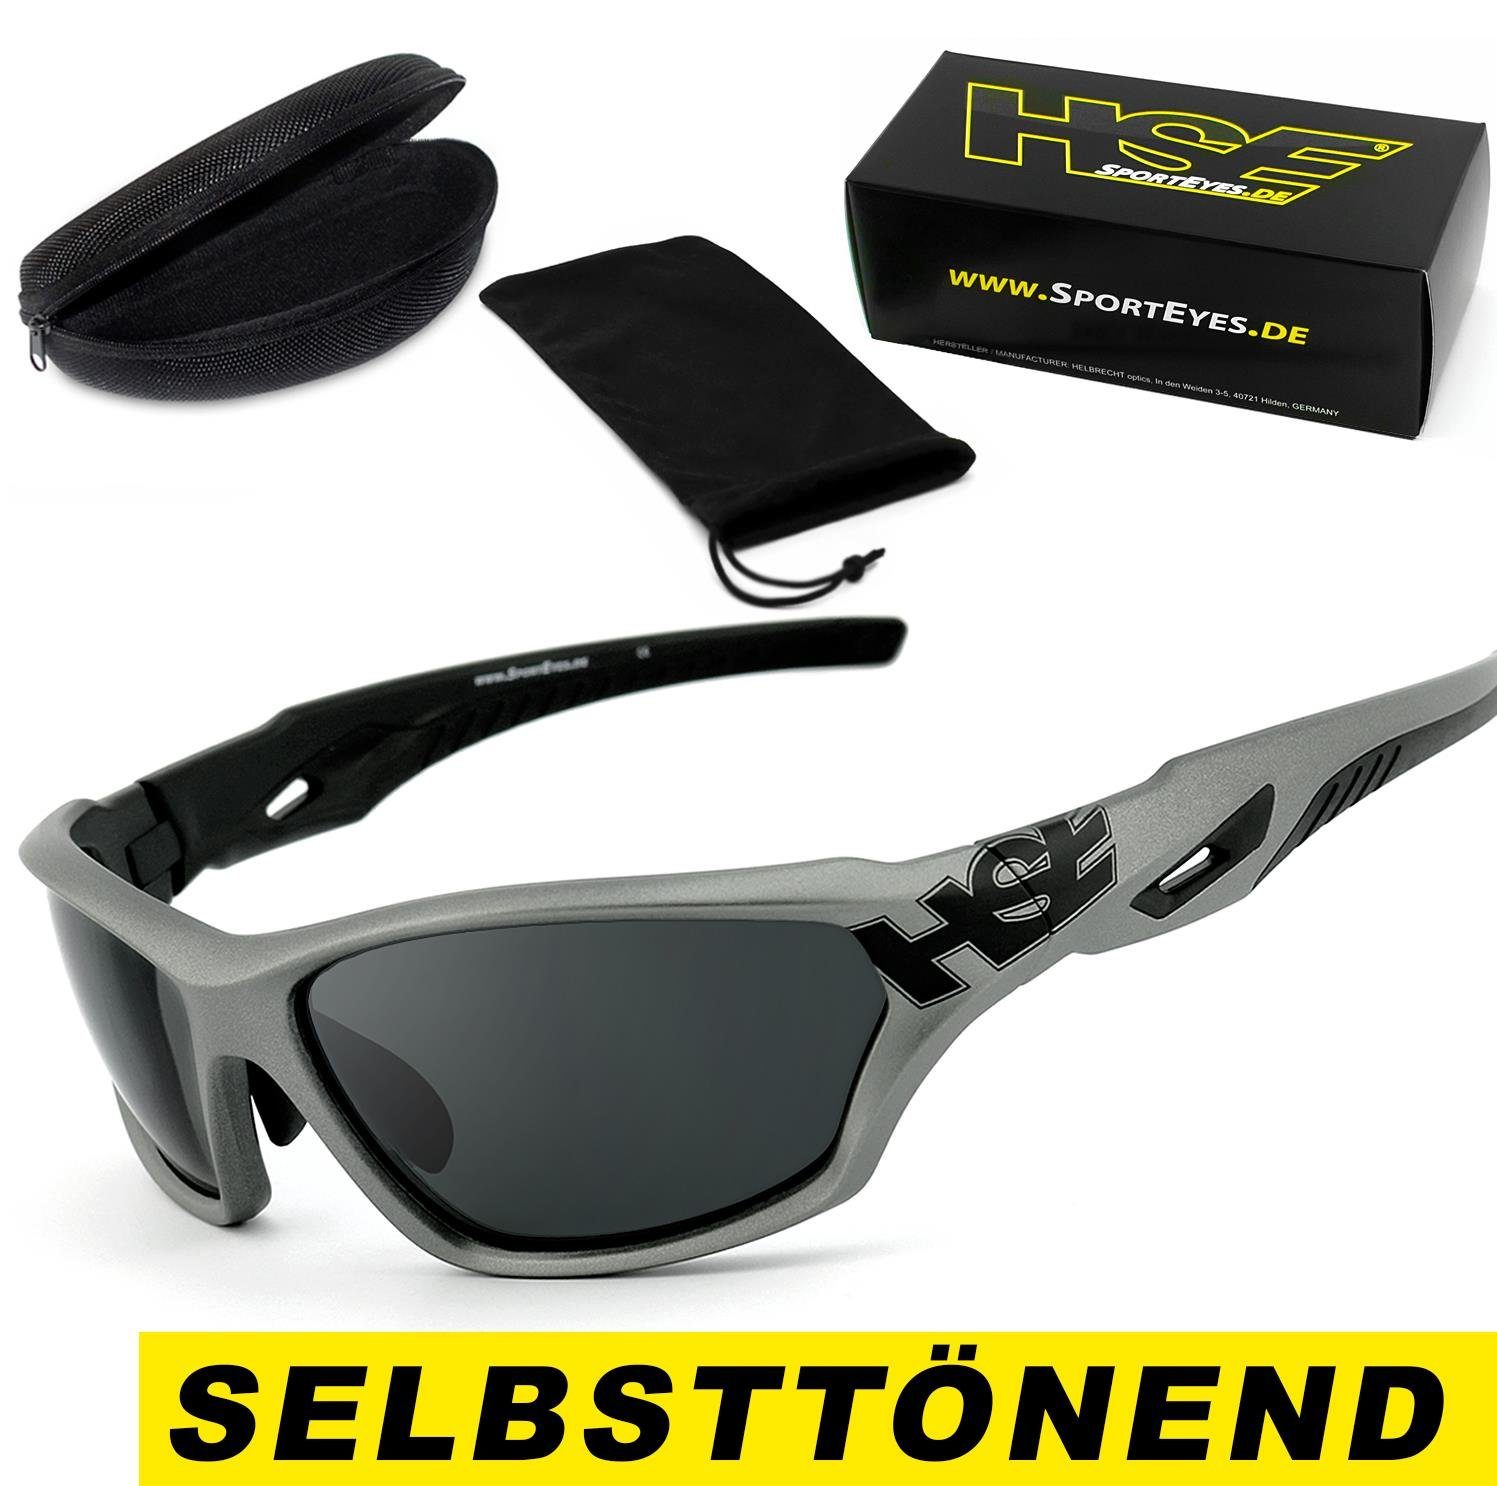 HSE - SportEyes Sportbrille 2093gm - selbsttönend, schnell selbsttönende Gläser, MADE IN GERMANY